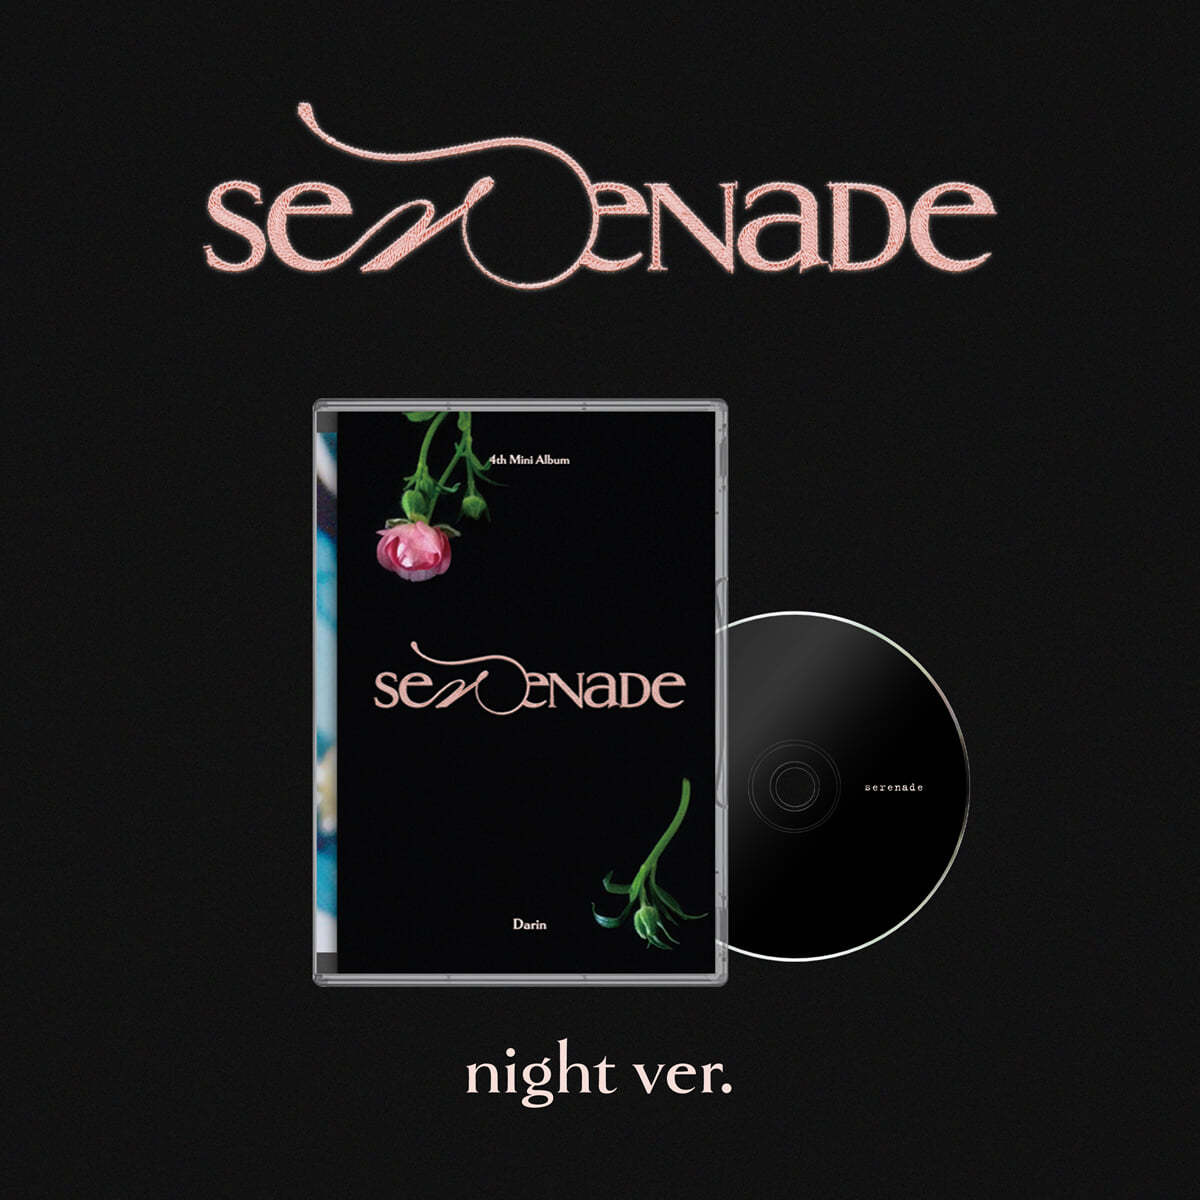 다린 - 미니앨범 4집 : serenade [night ver.]